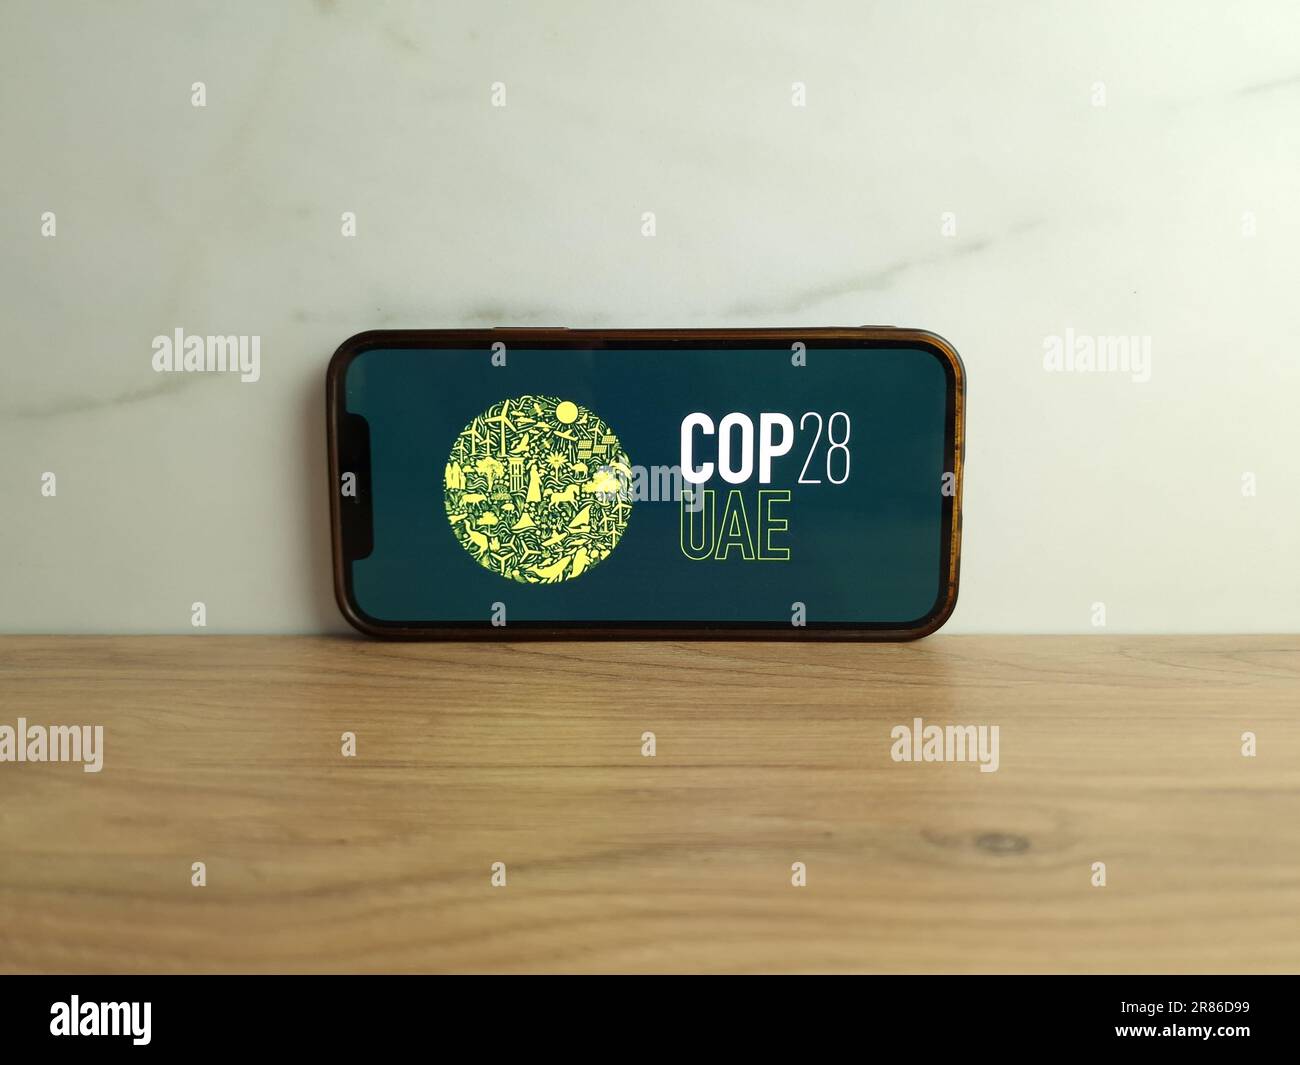 Konskie, Polen - 17. Juni 2023: COP28 Logo der United Nations Climate Change Conference der Vereinigten Arabischen Emirate auf dem Bildschirm des Mobiltelefons Stockfoto